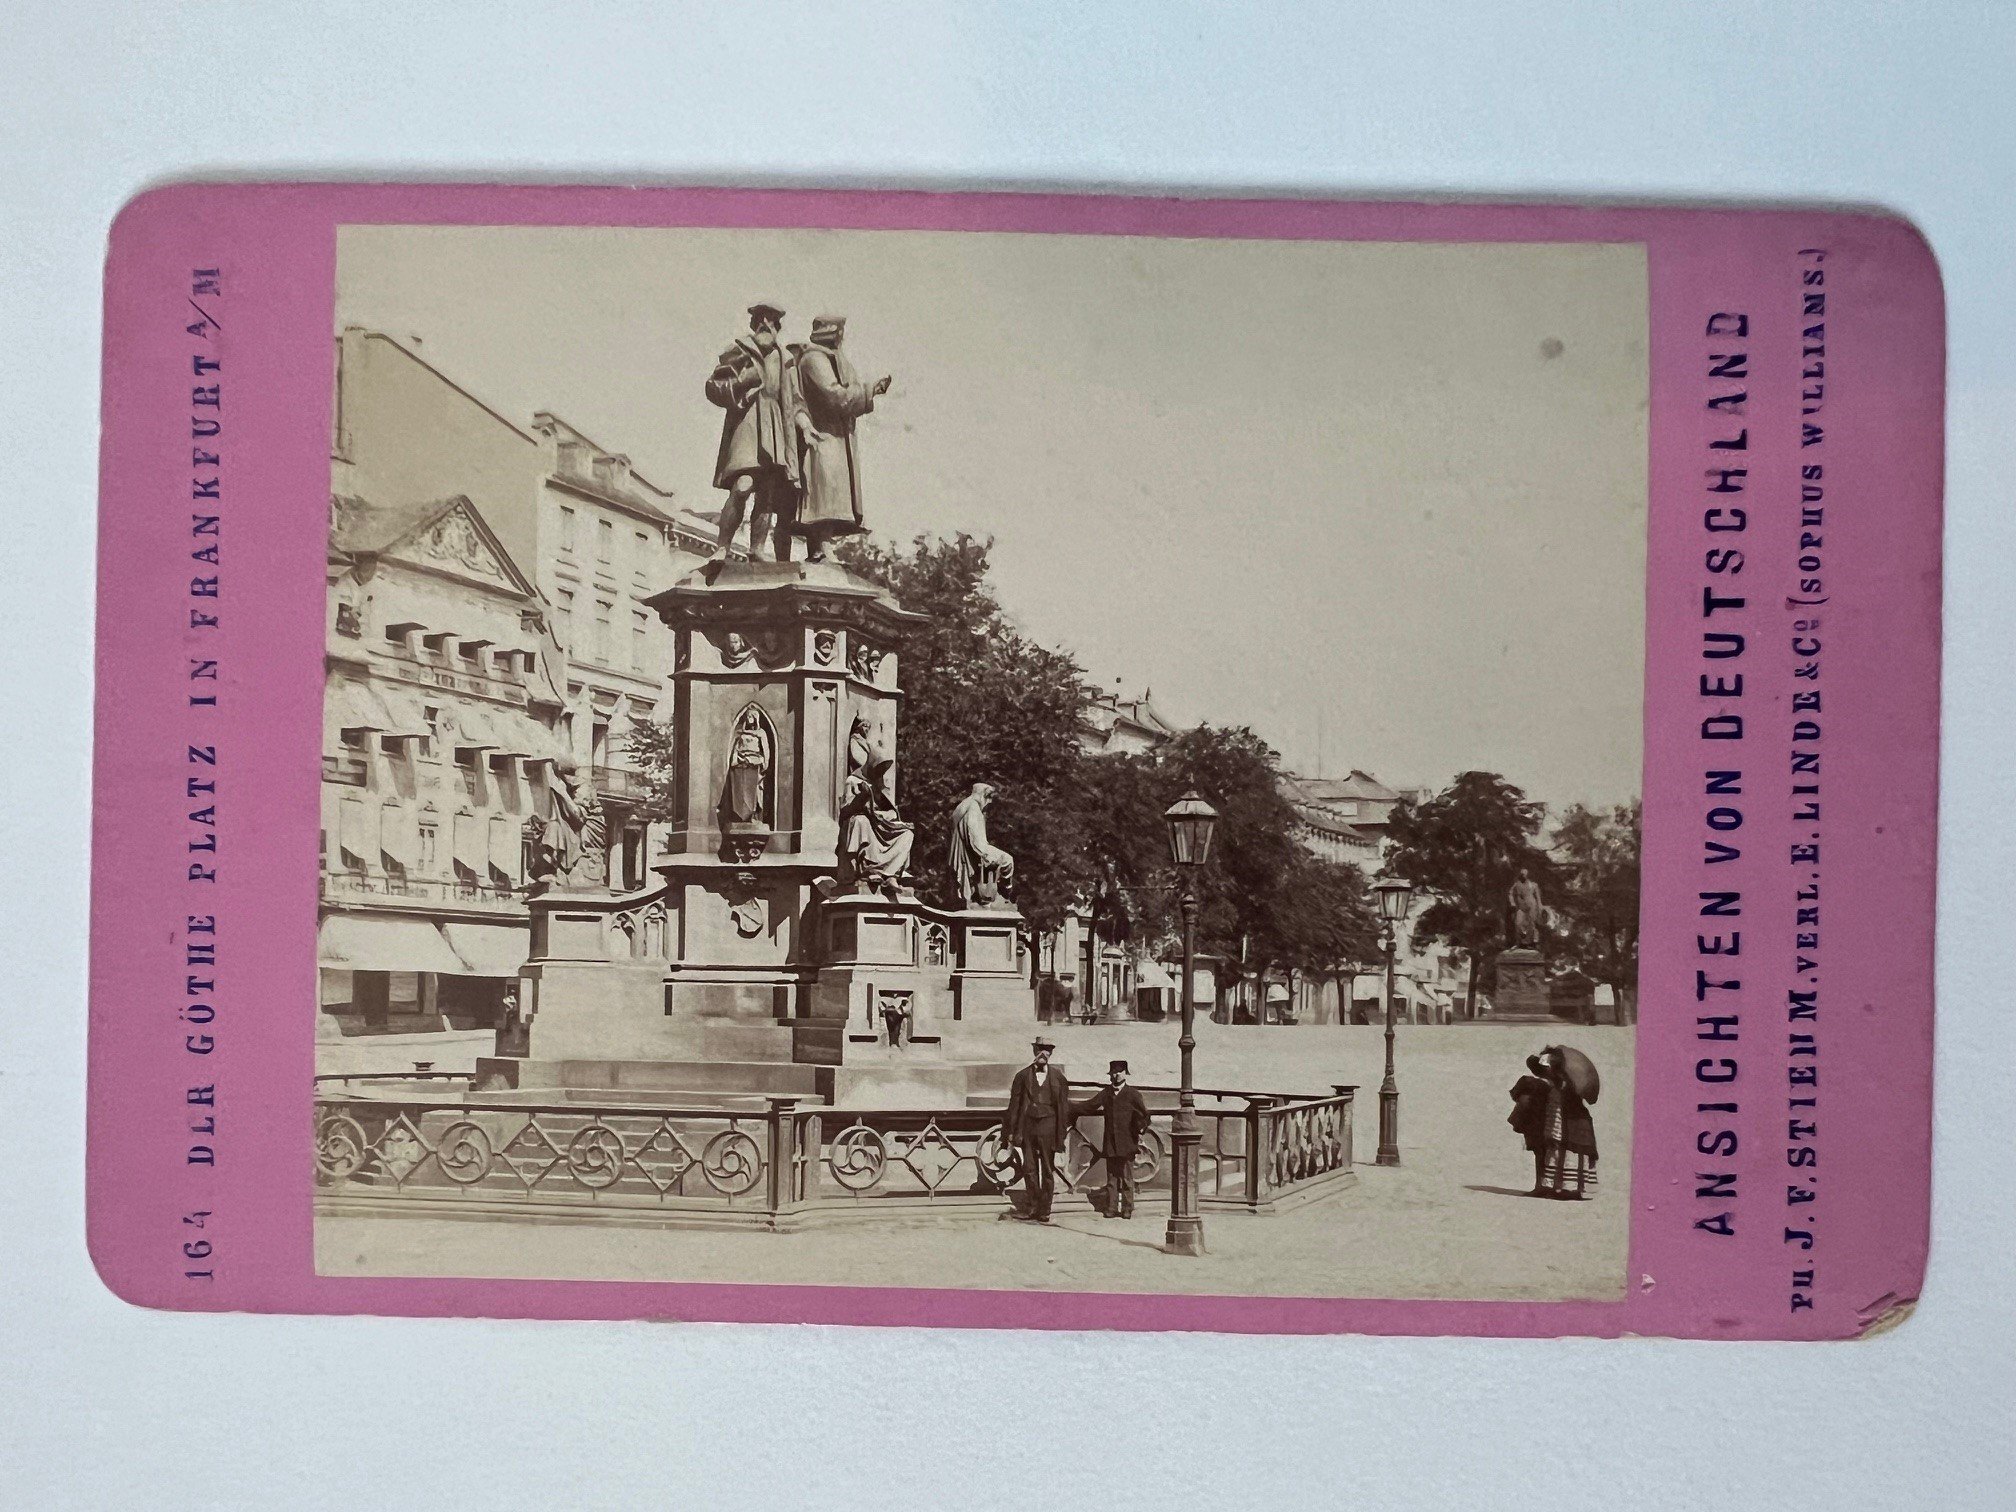 CdV, Johann Friedrich Stiehm, Frankfurt, Nr. 164, Der Göthe-Platz, ca. 1881. (Taunus-Rhein-Main - Regionalgeschichtliche Sammlung Dr. Stefan Naas CC BY-NC-SA)